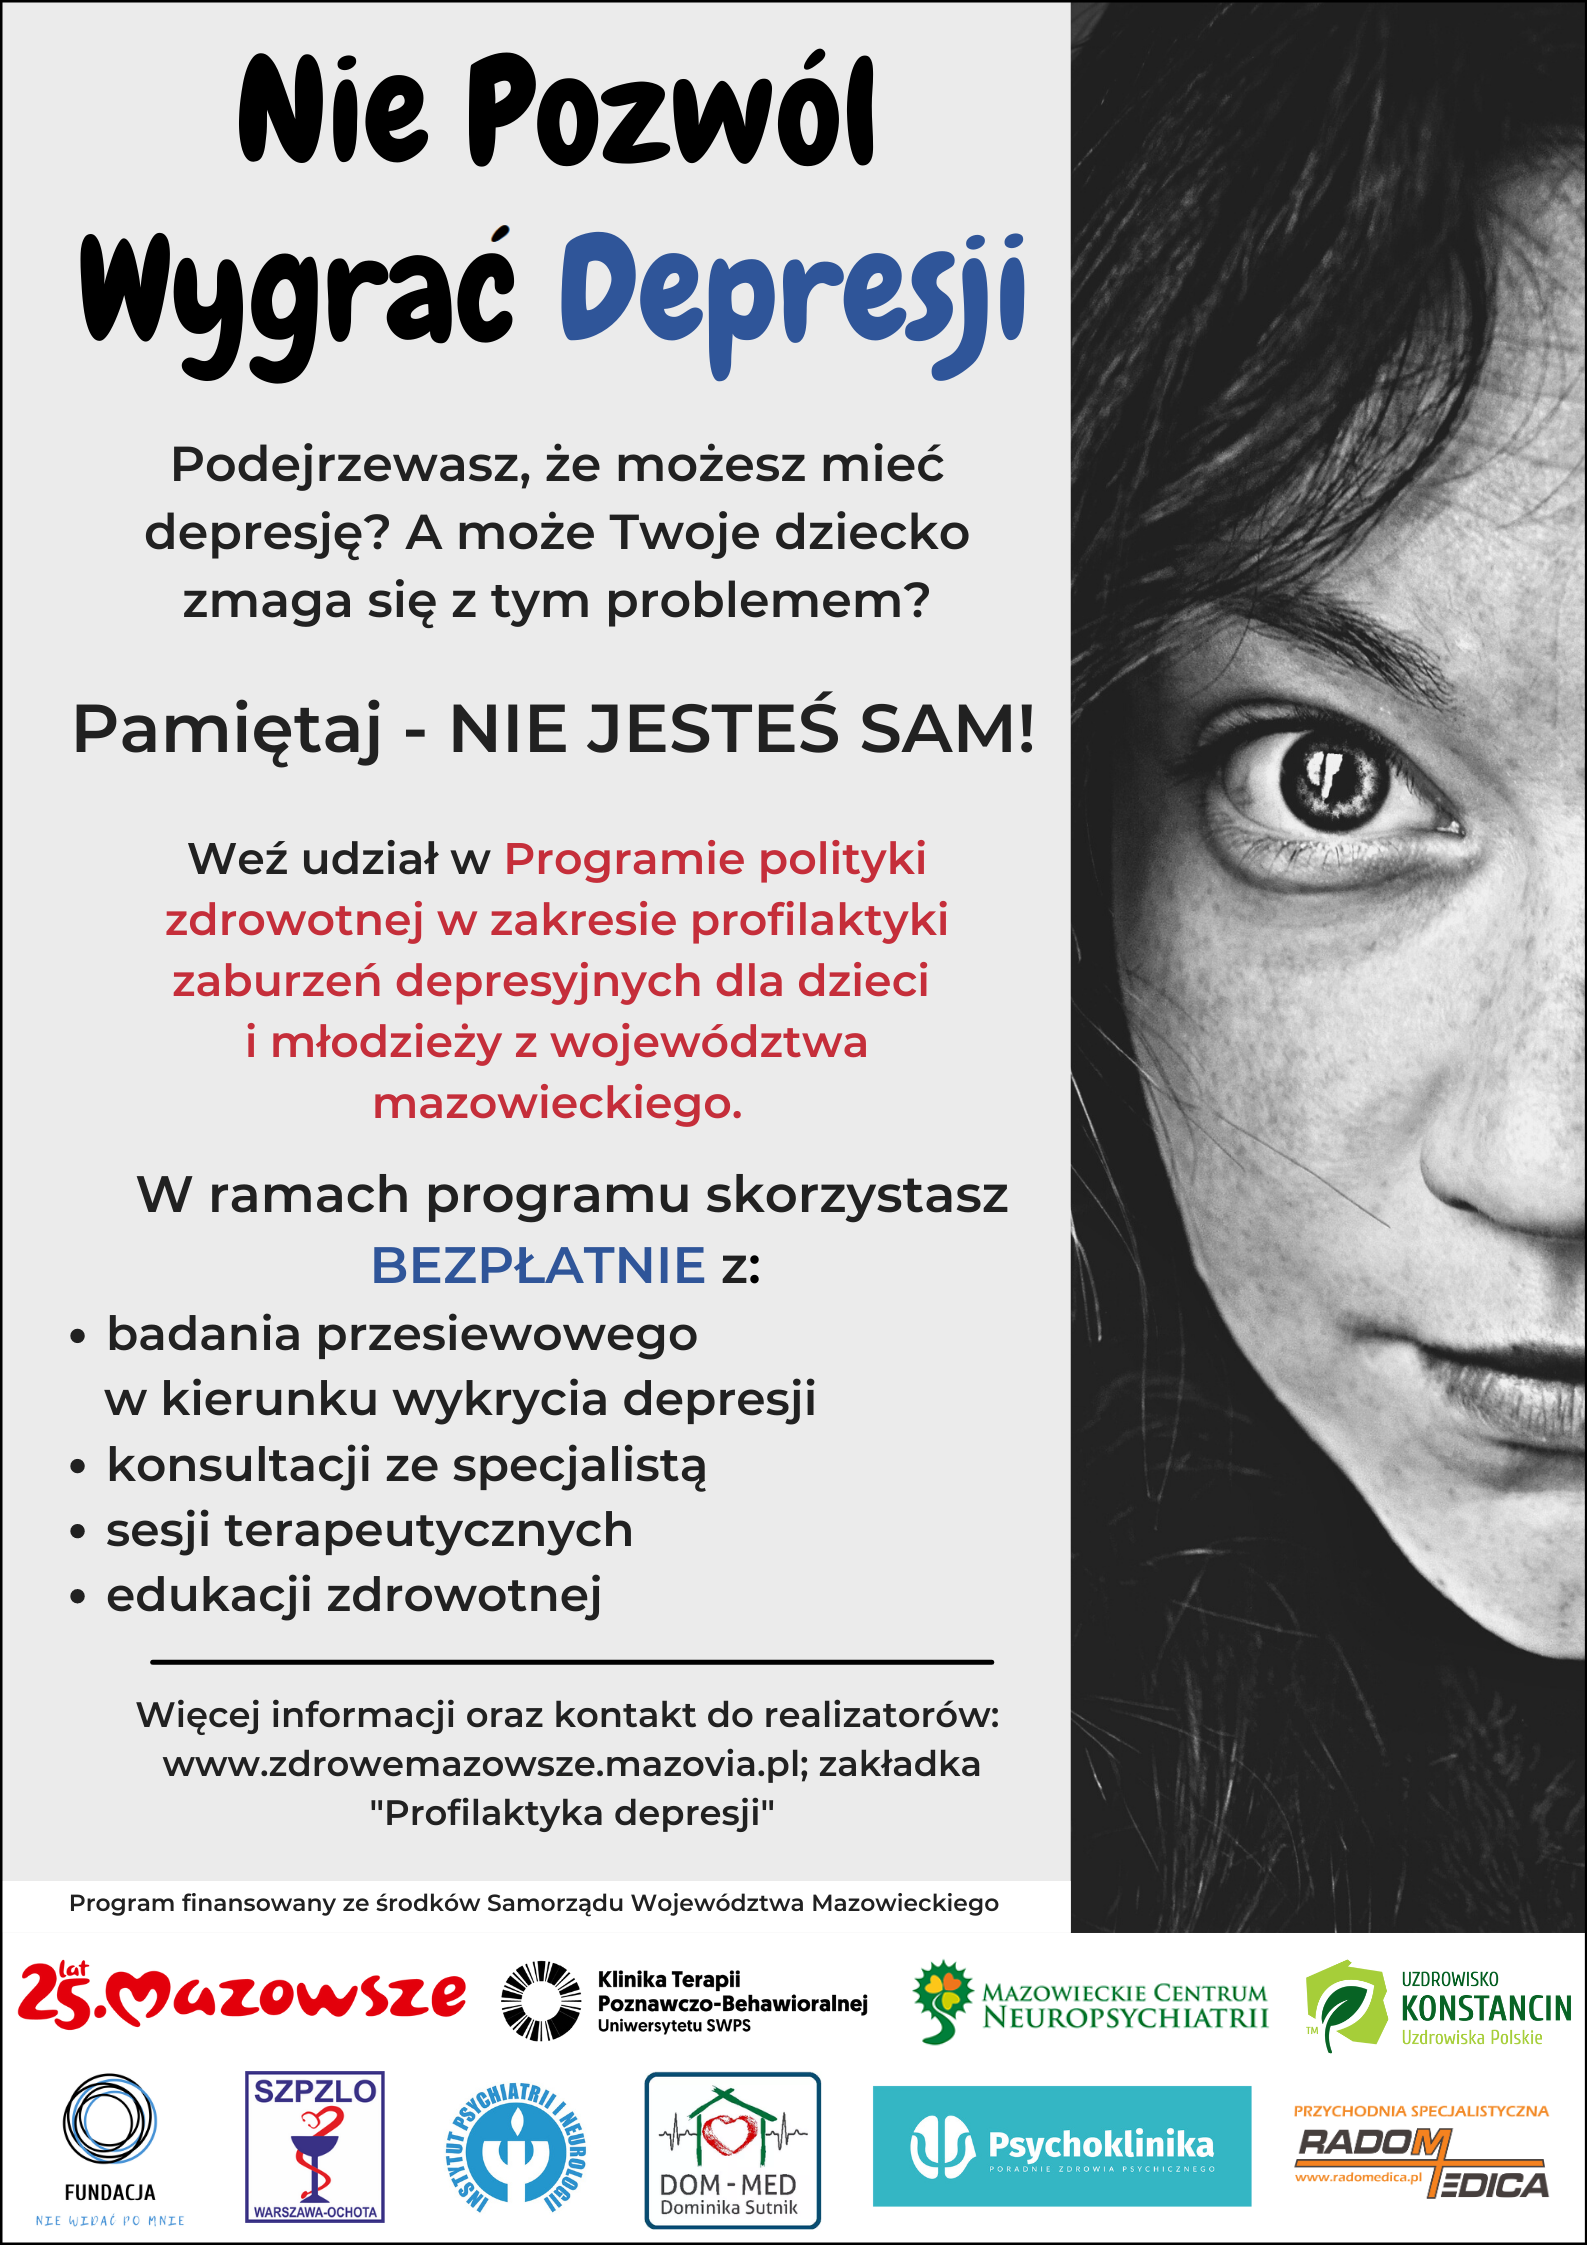 Plakat programu: po prawej stronie czarno-białe zdjęcie dziewczęcej twarzy, po lewej stronie informacje nt. programu.